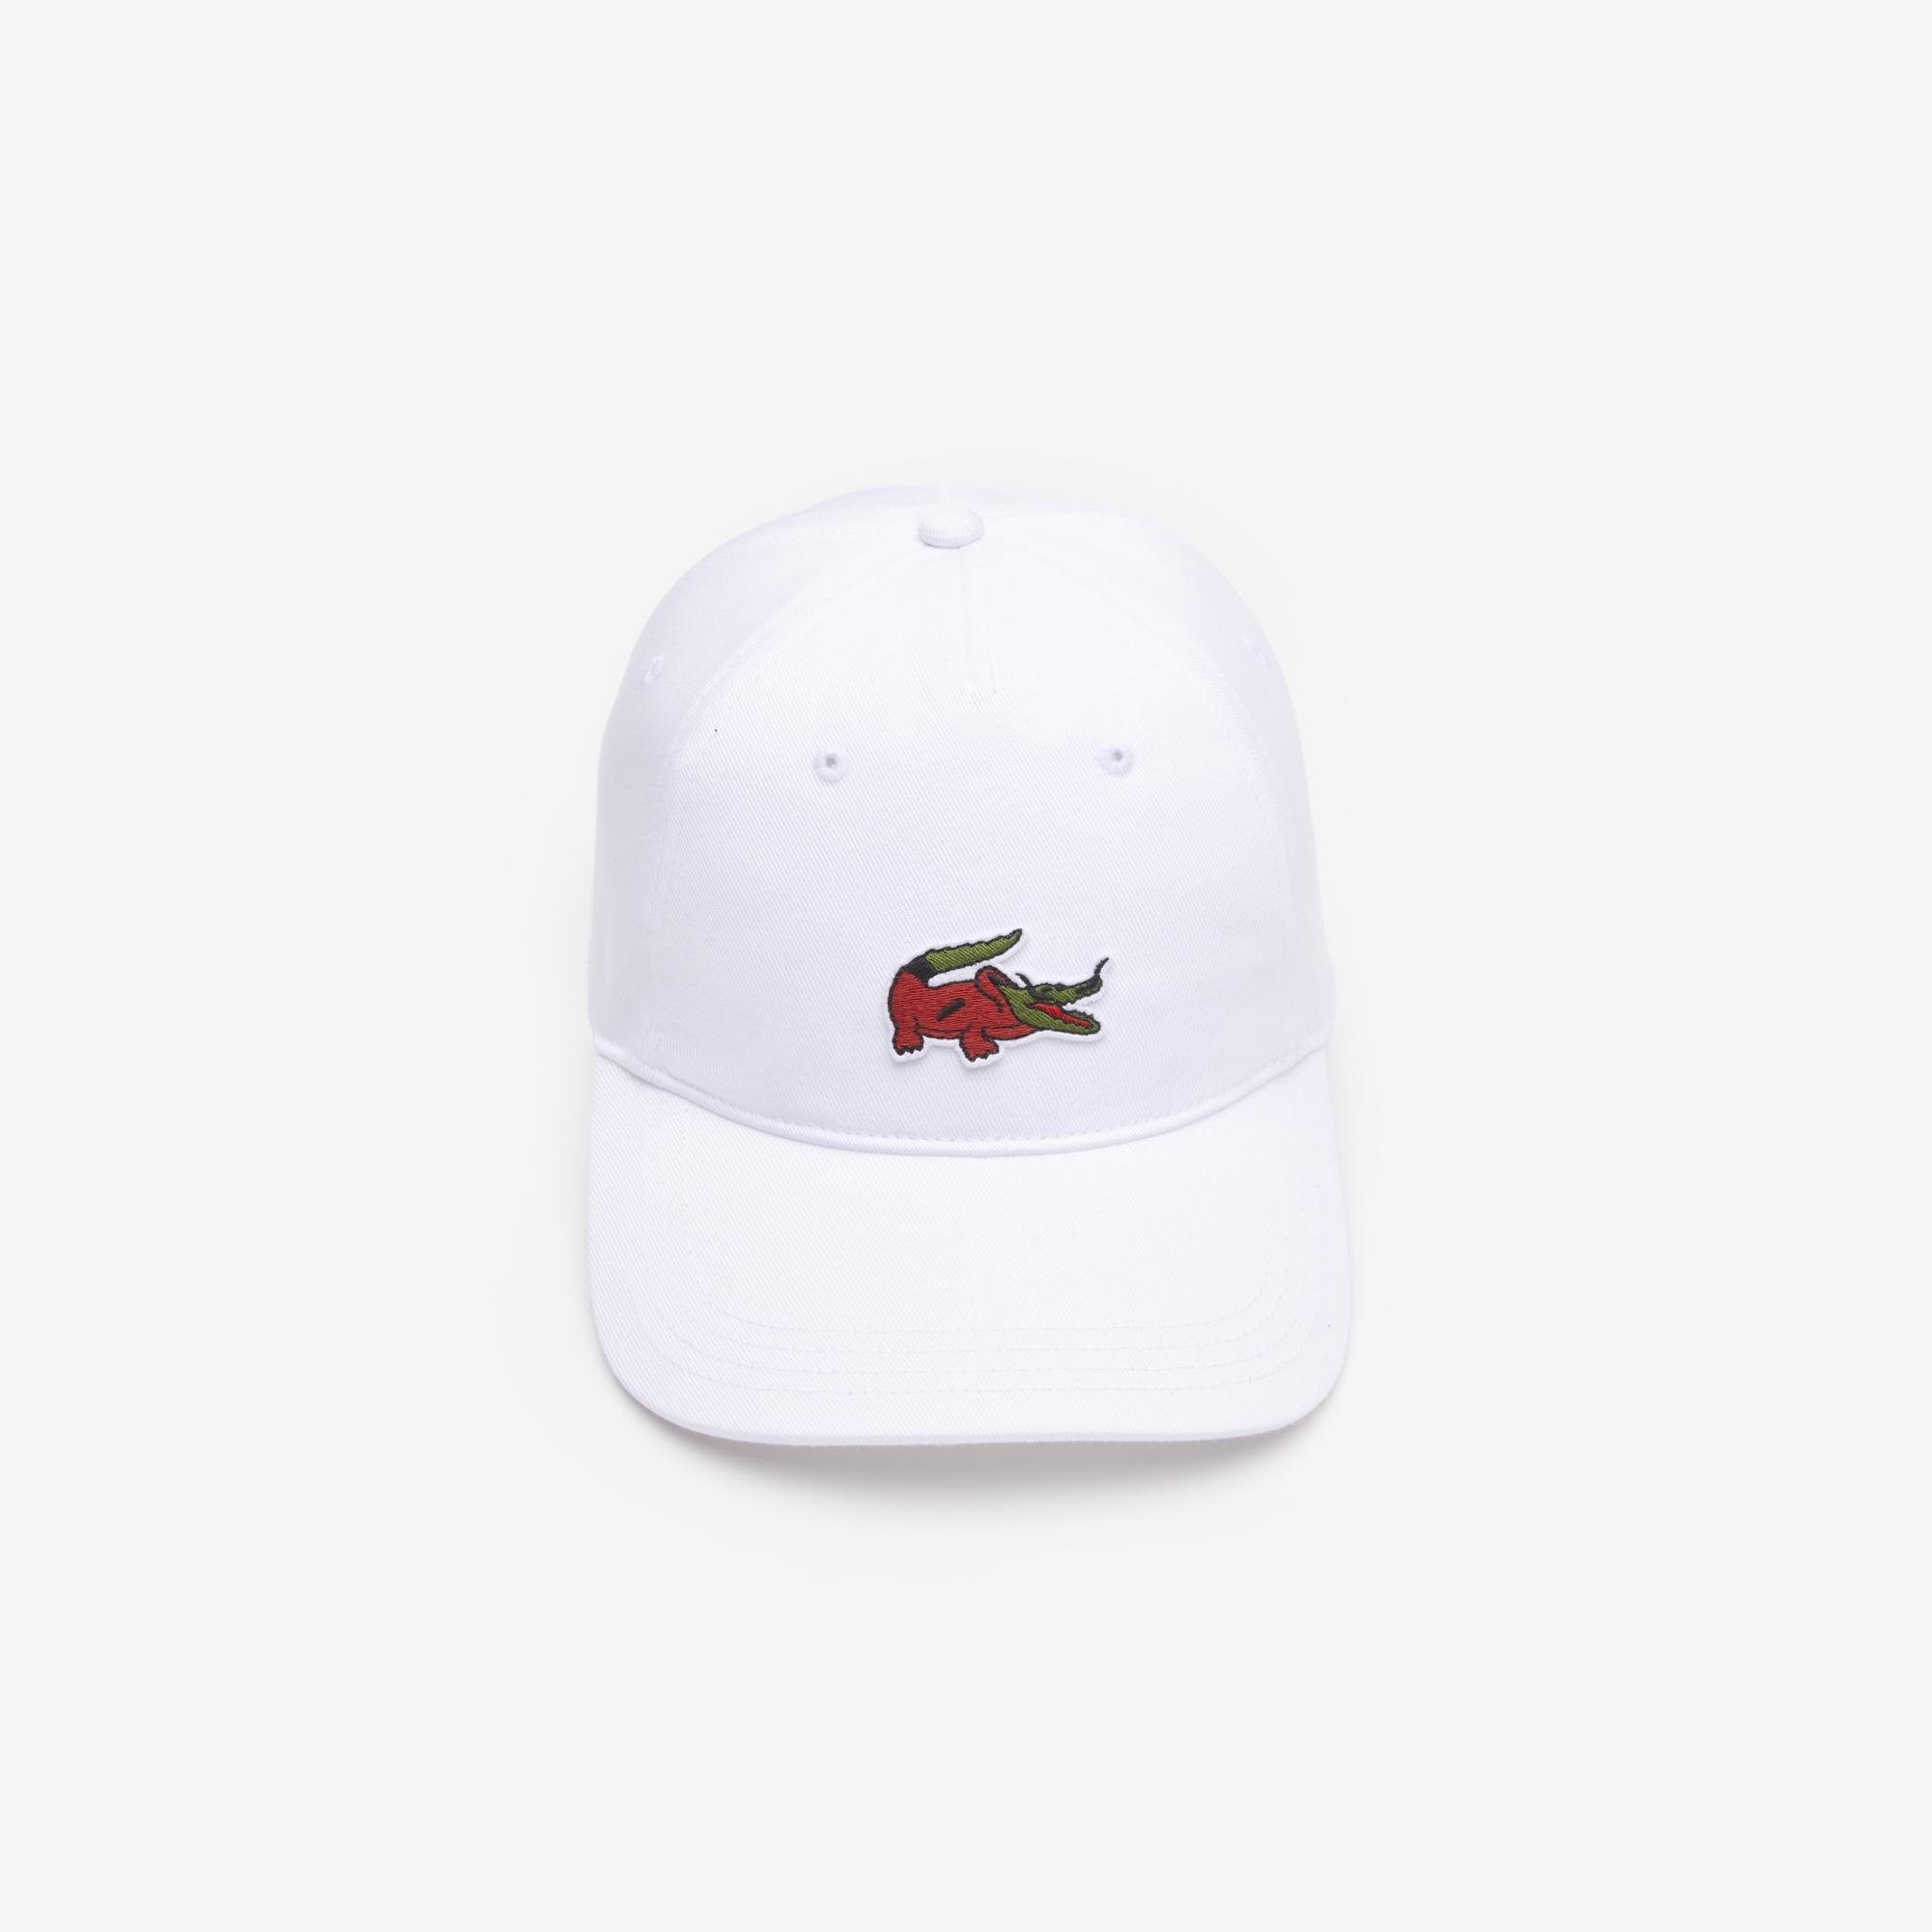 Lacoste x Netflix Unisex Beyaz Şapka. 5